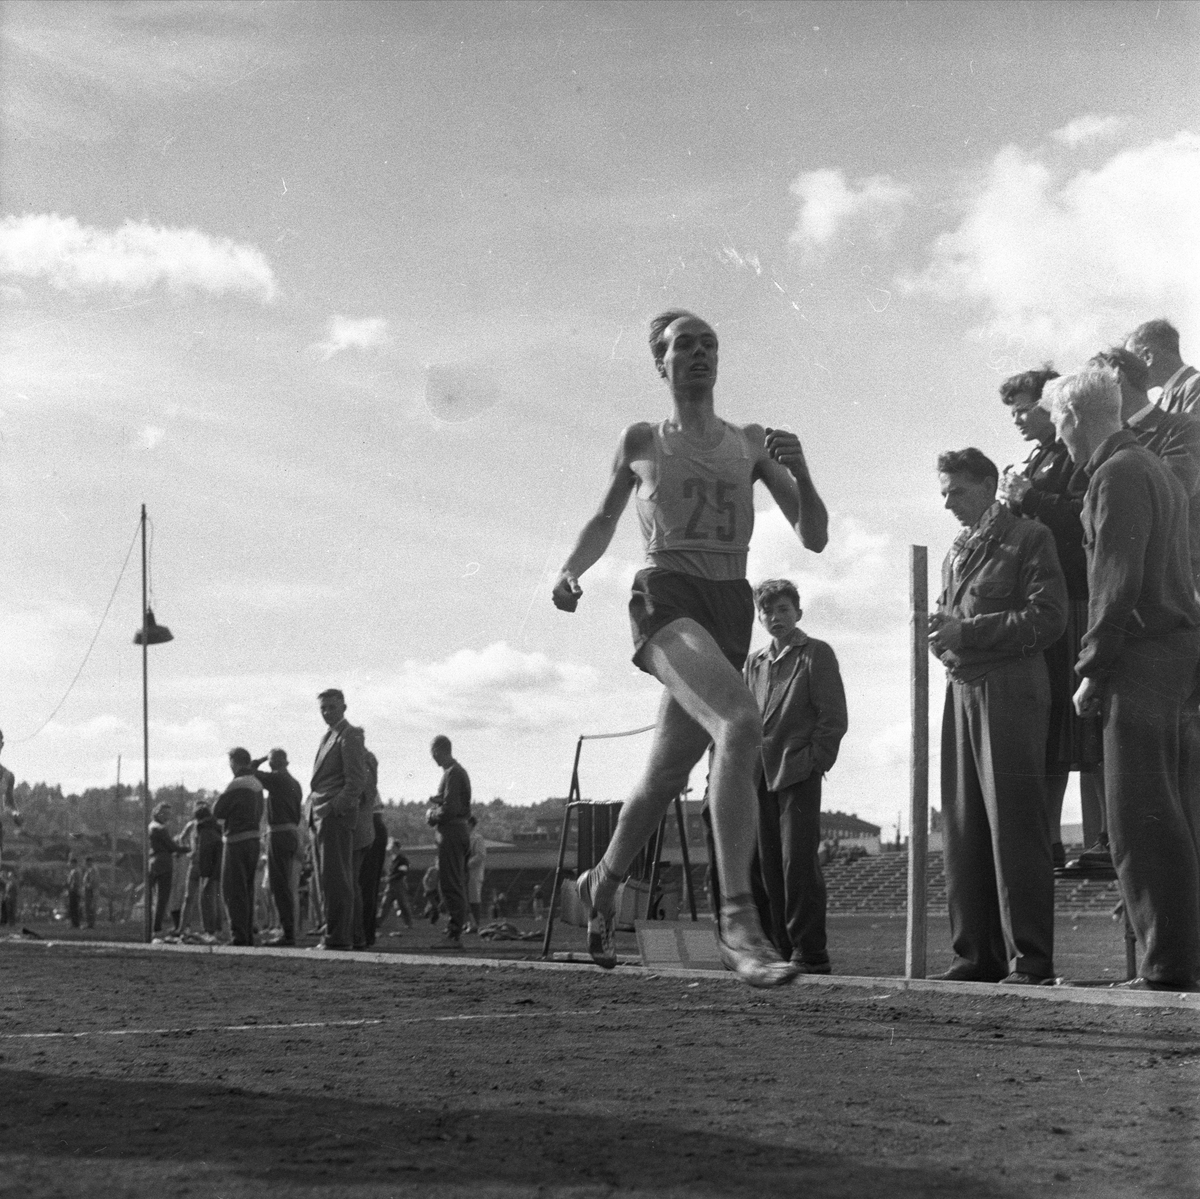 Norge, 17.09.1956. Bygdelag. Nordfjordlaget. Trøndere. Idrettstevne, løp.